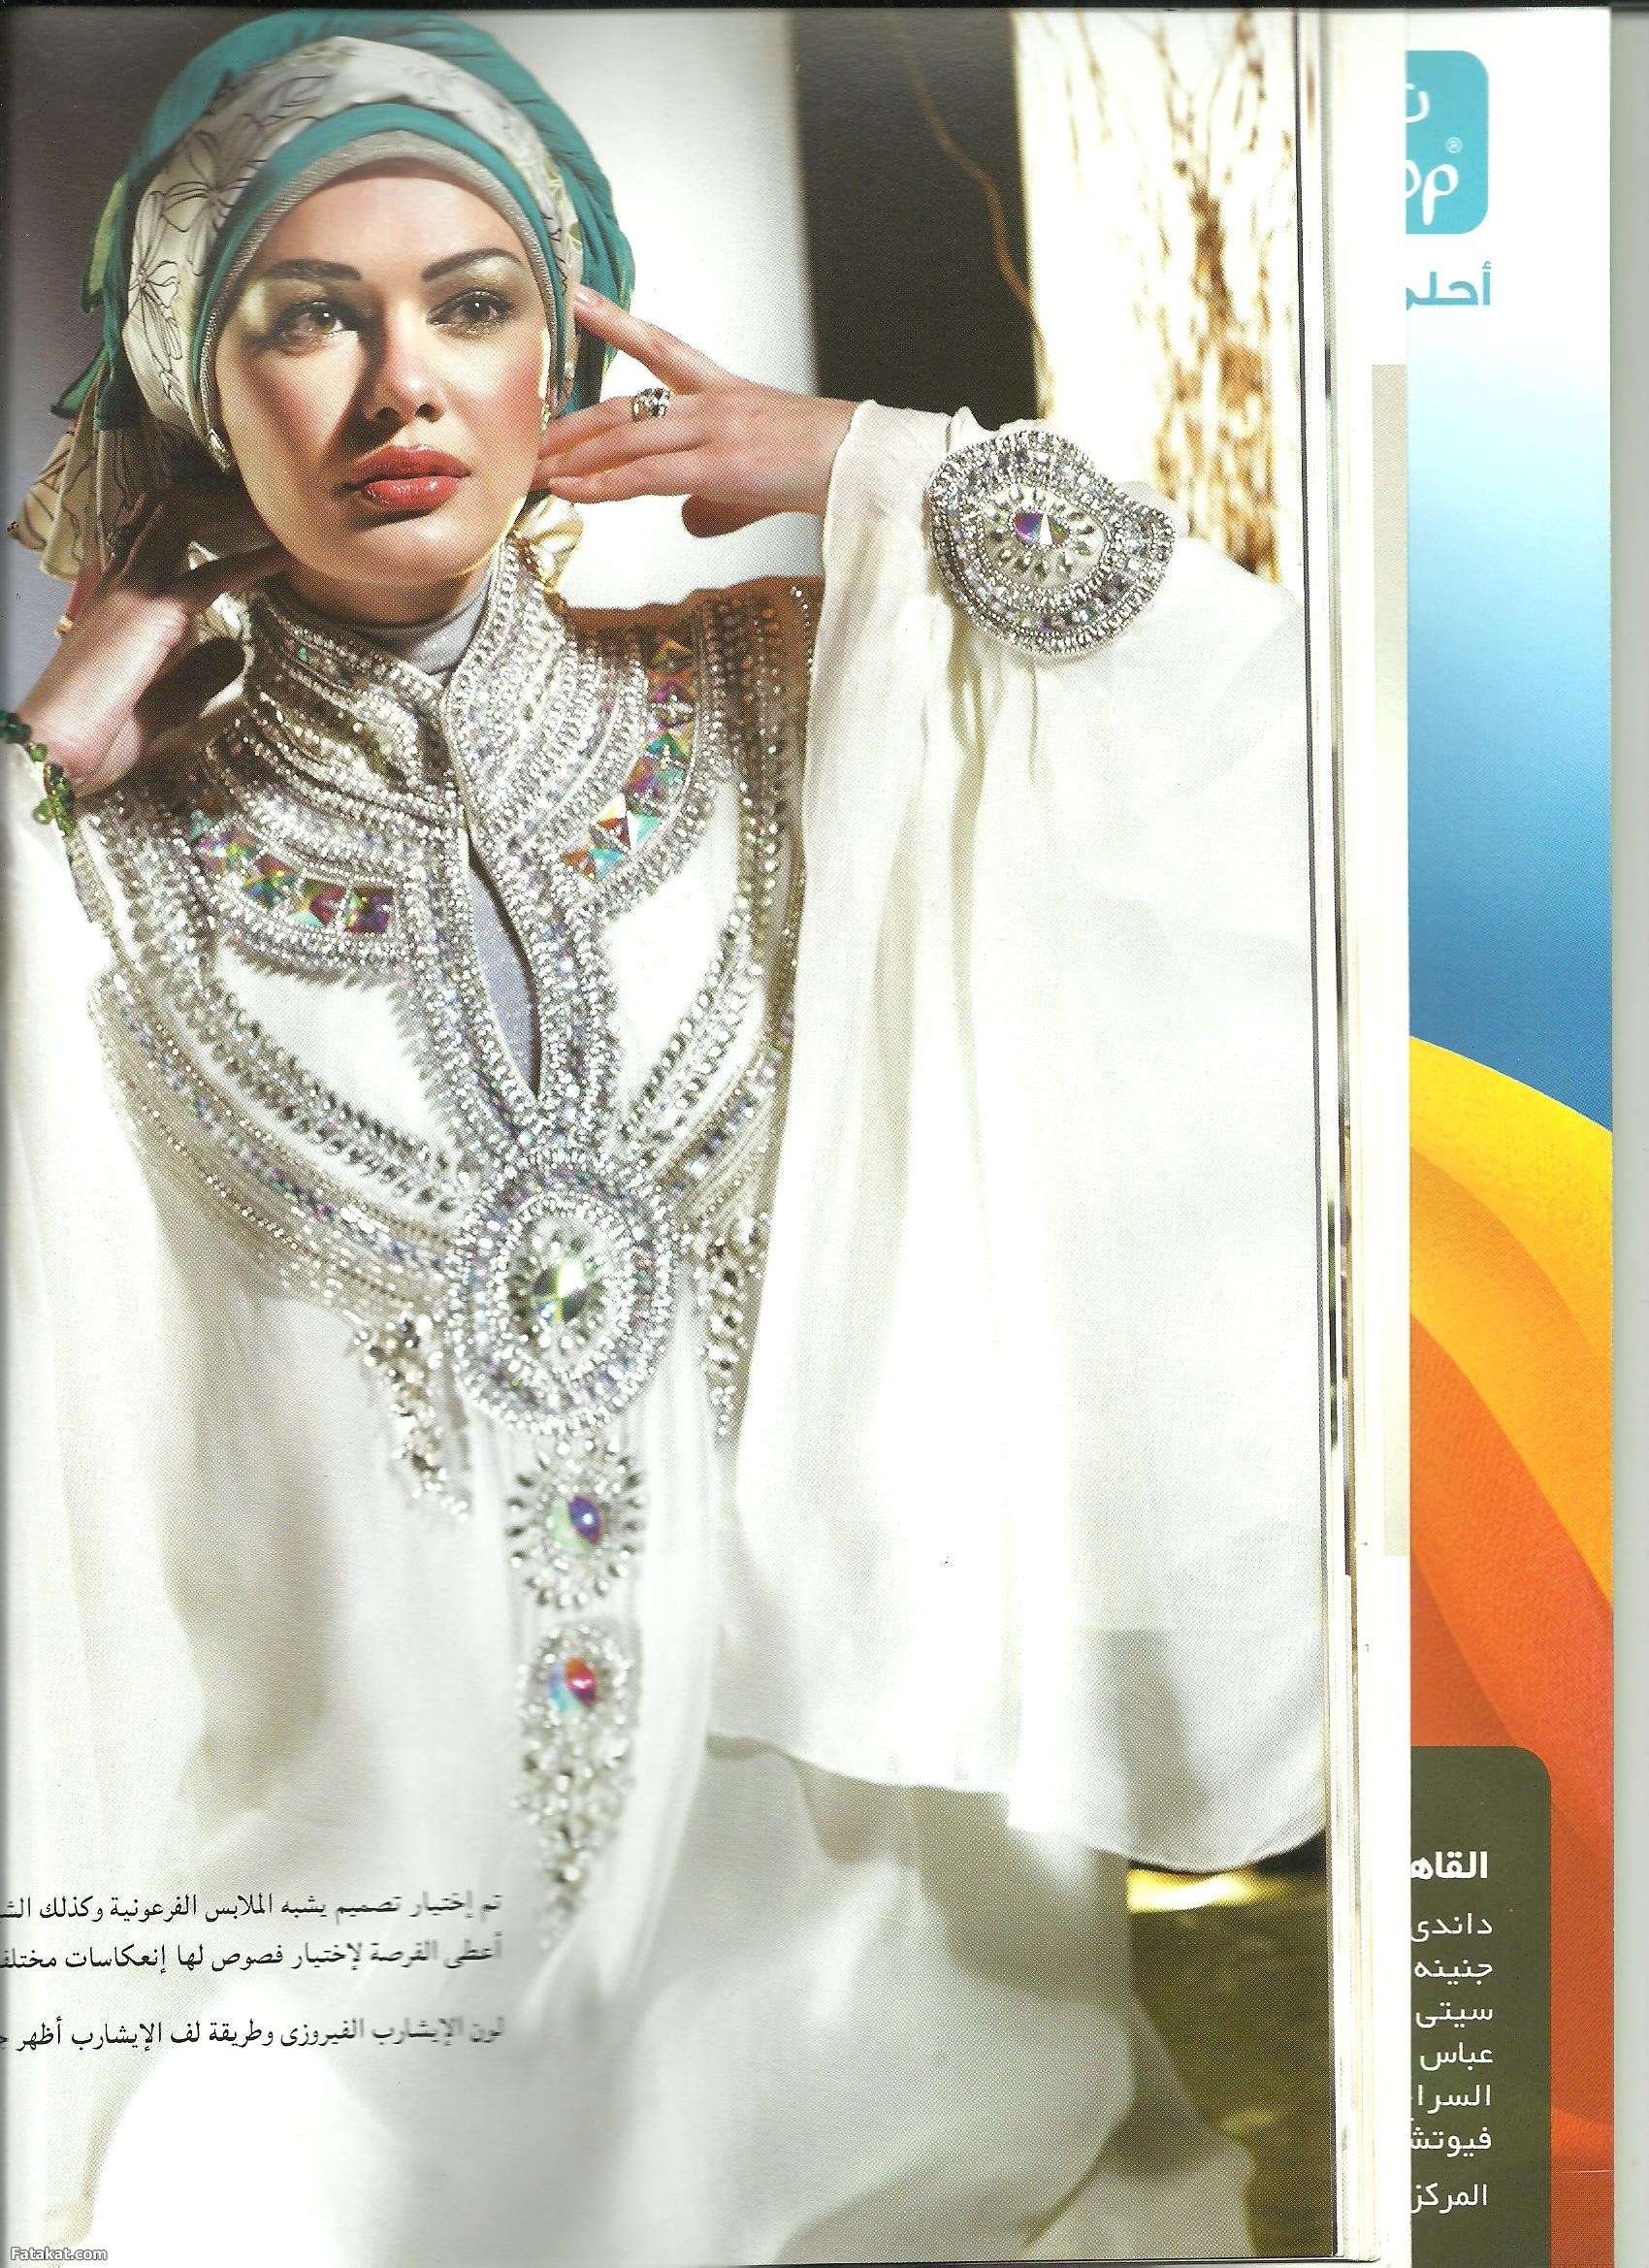 حصرررررى مجله حجاب فاشون فبراير 2012 على منتدى الستات وبس 13309615265579